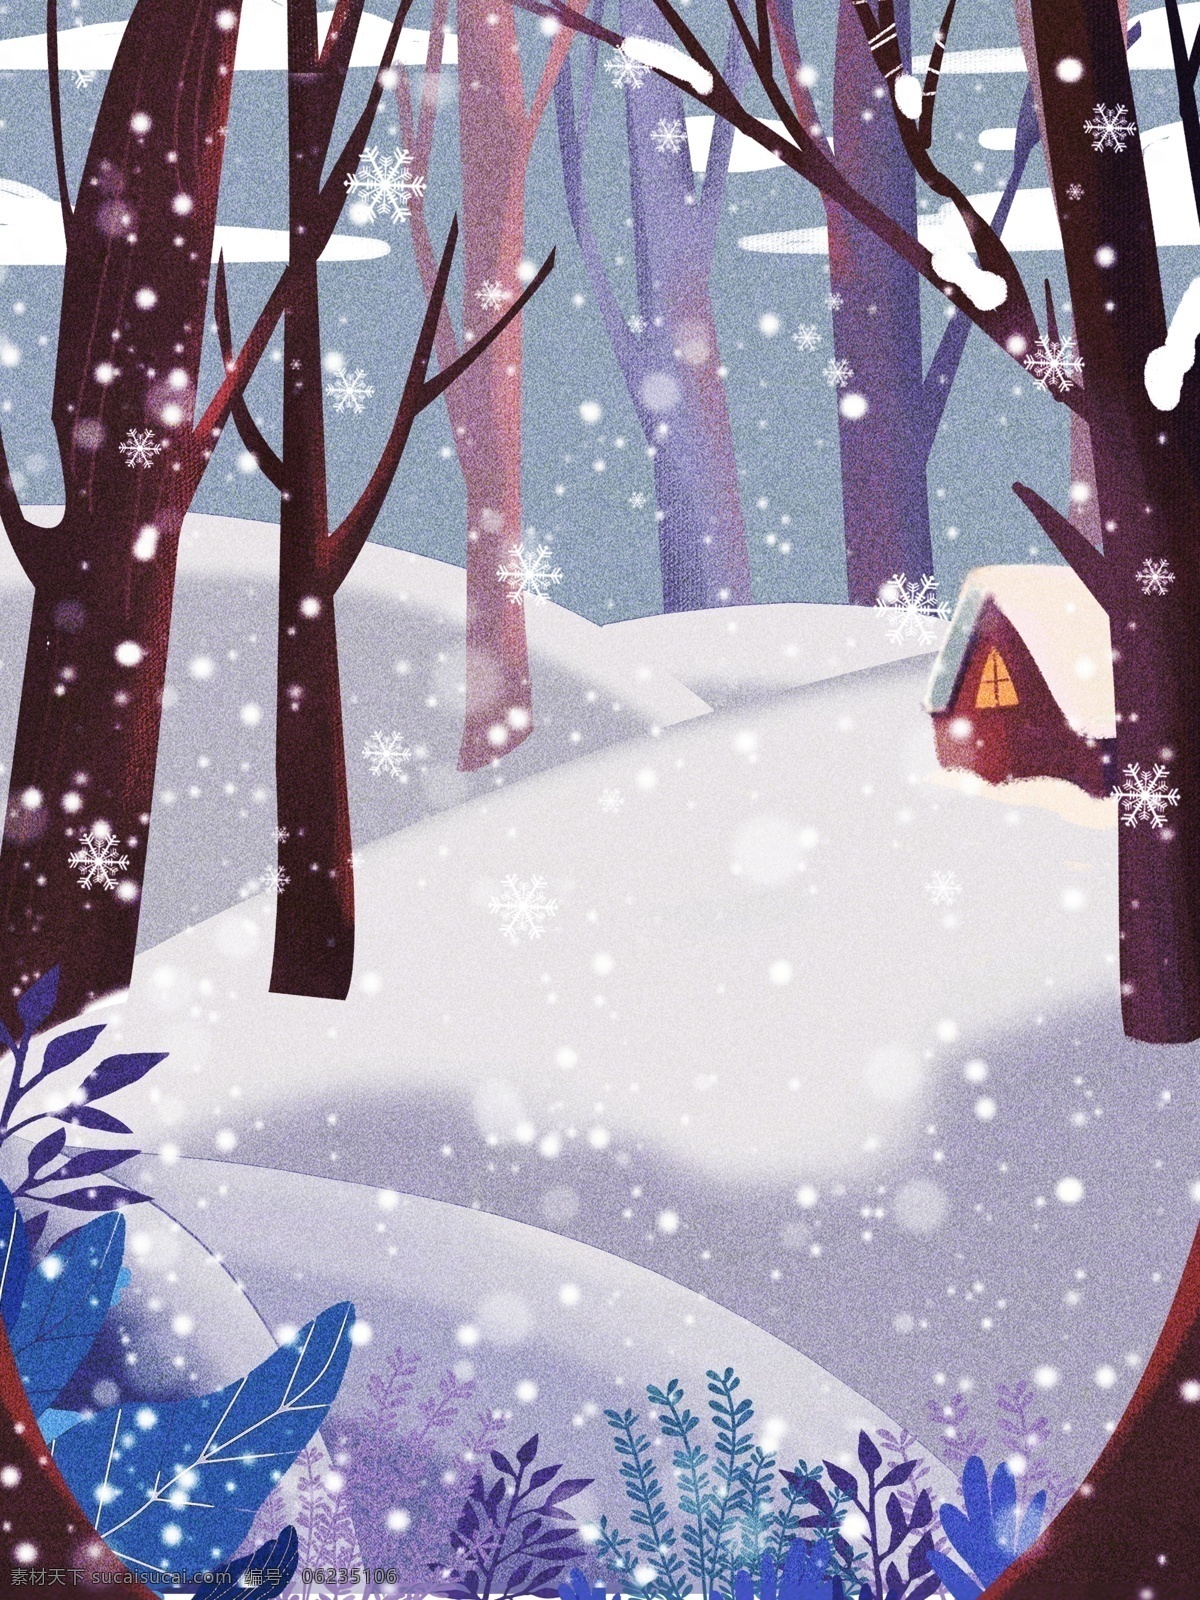 彩绘 大雪 节气 雪景 背景 雪地背景 手绘背景 下雪天背景 蓝色背景 蓝天白云 水彩背景 树林背景